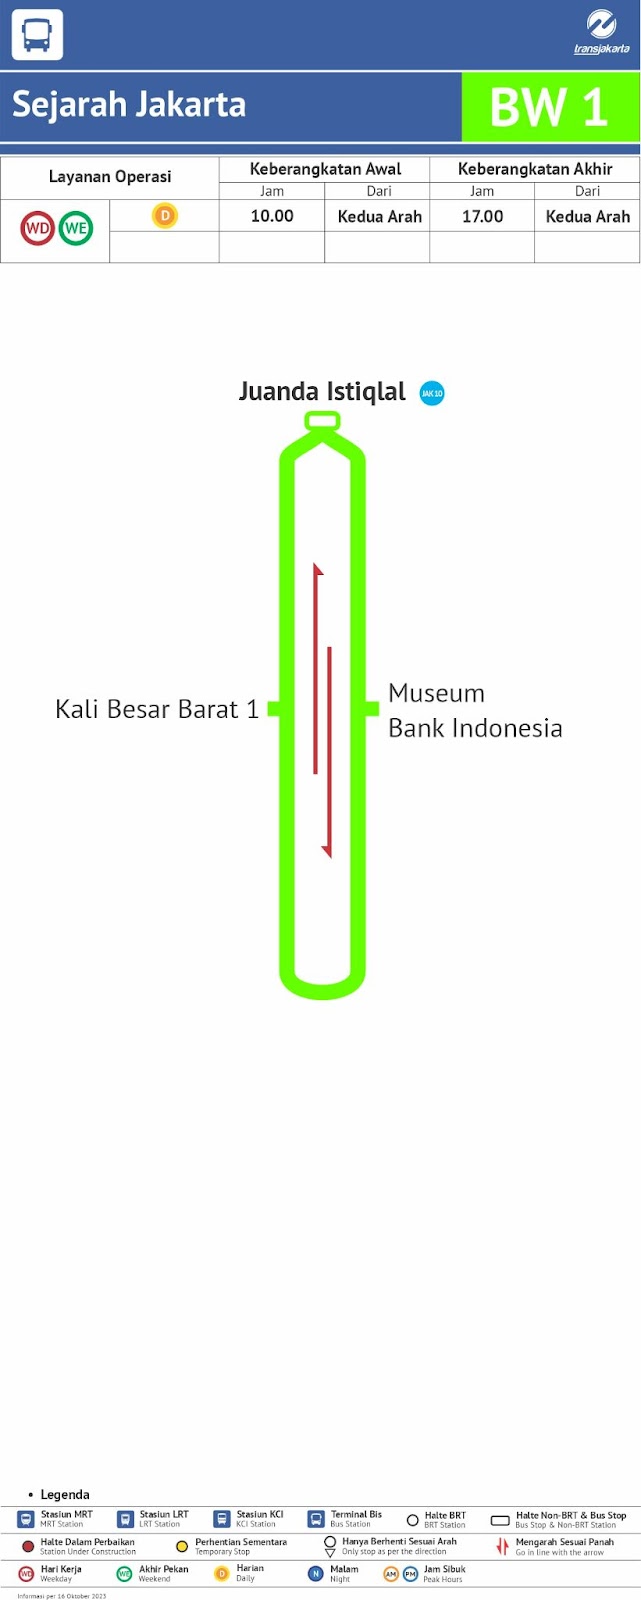 BW1:&nbsp;Sejarah Jakarta&nbsp;(History of Jakarta) route map. Source: transjakarta.co.id